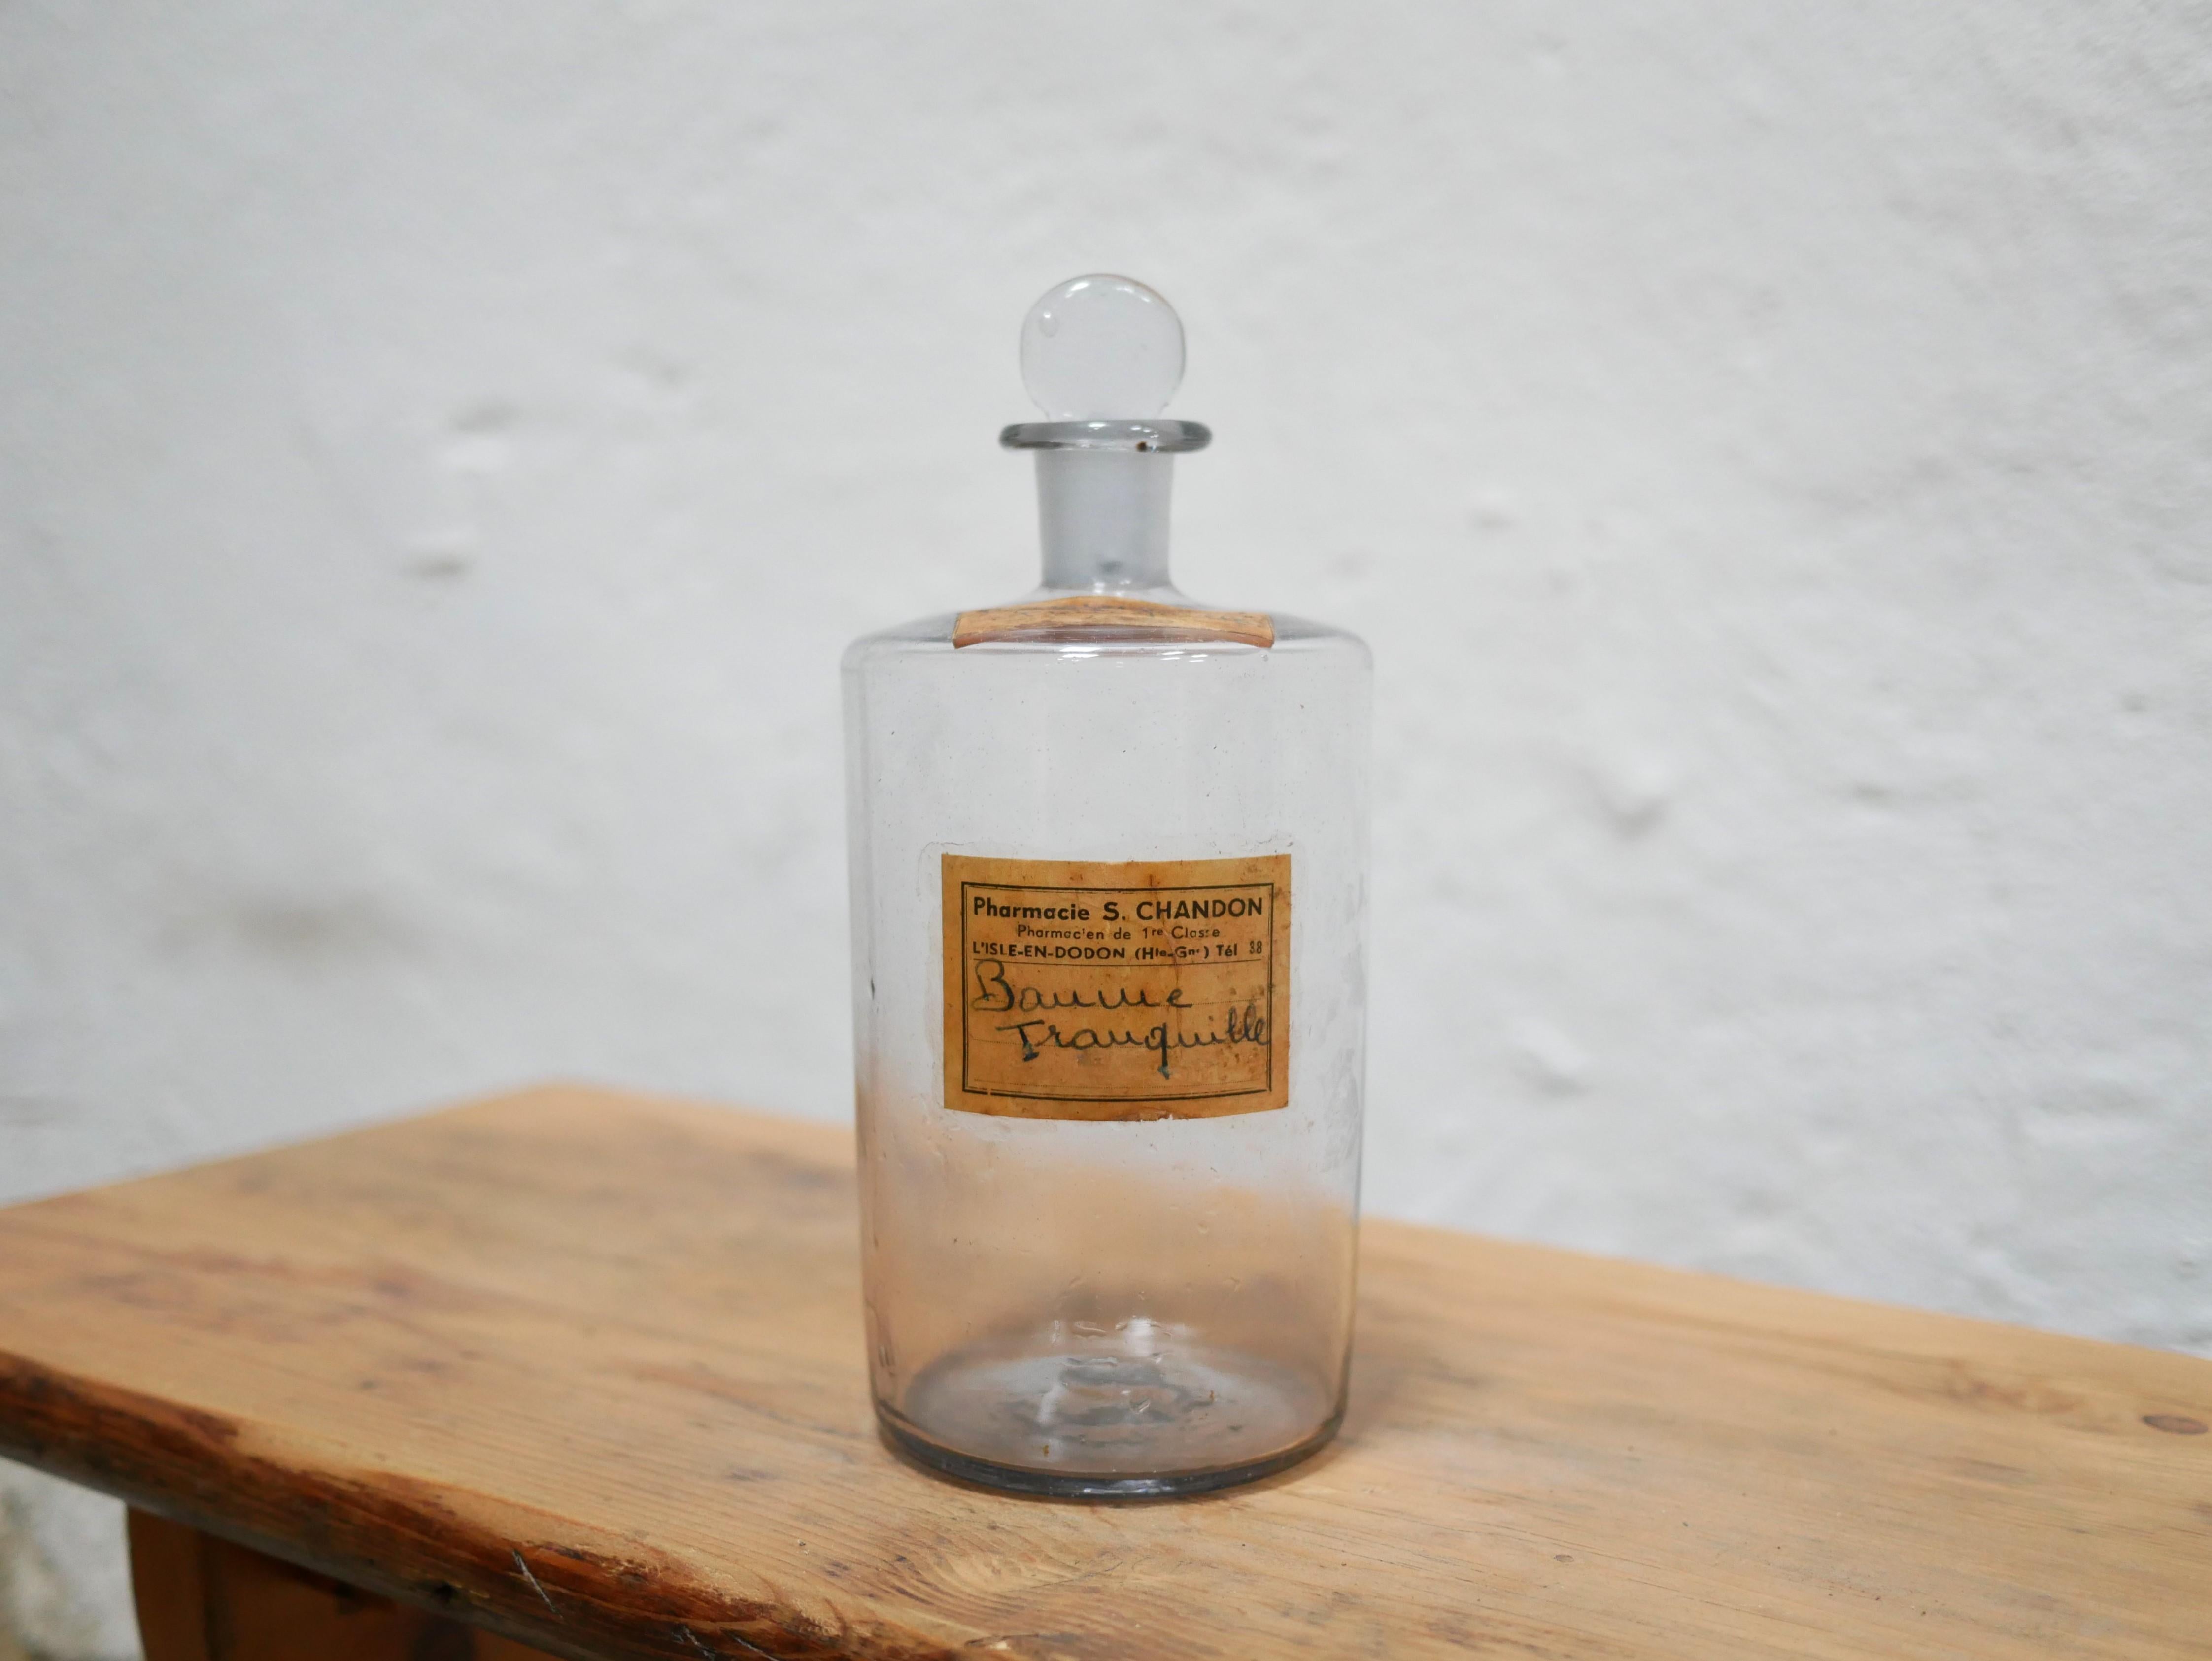 Apothekerflasche aus transparentem geblasenem Glas aus den 1920er Jahren.

Seine Retroform verleiht ihm viel Eleganz und Charakter.
Dekoratives Objekt im Badezimmer, auf den Regalen der Küche, des Wohnzimmers oder denen des Zimmers, die Flaschen der